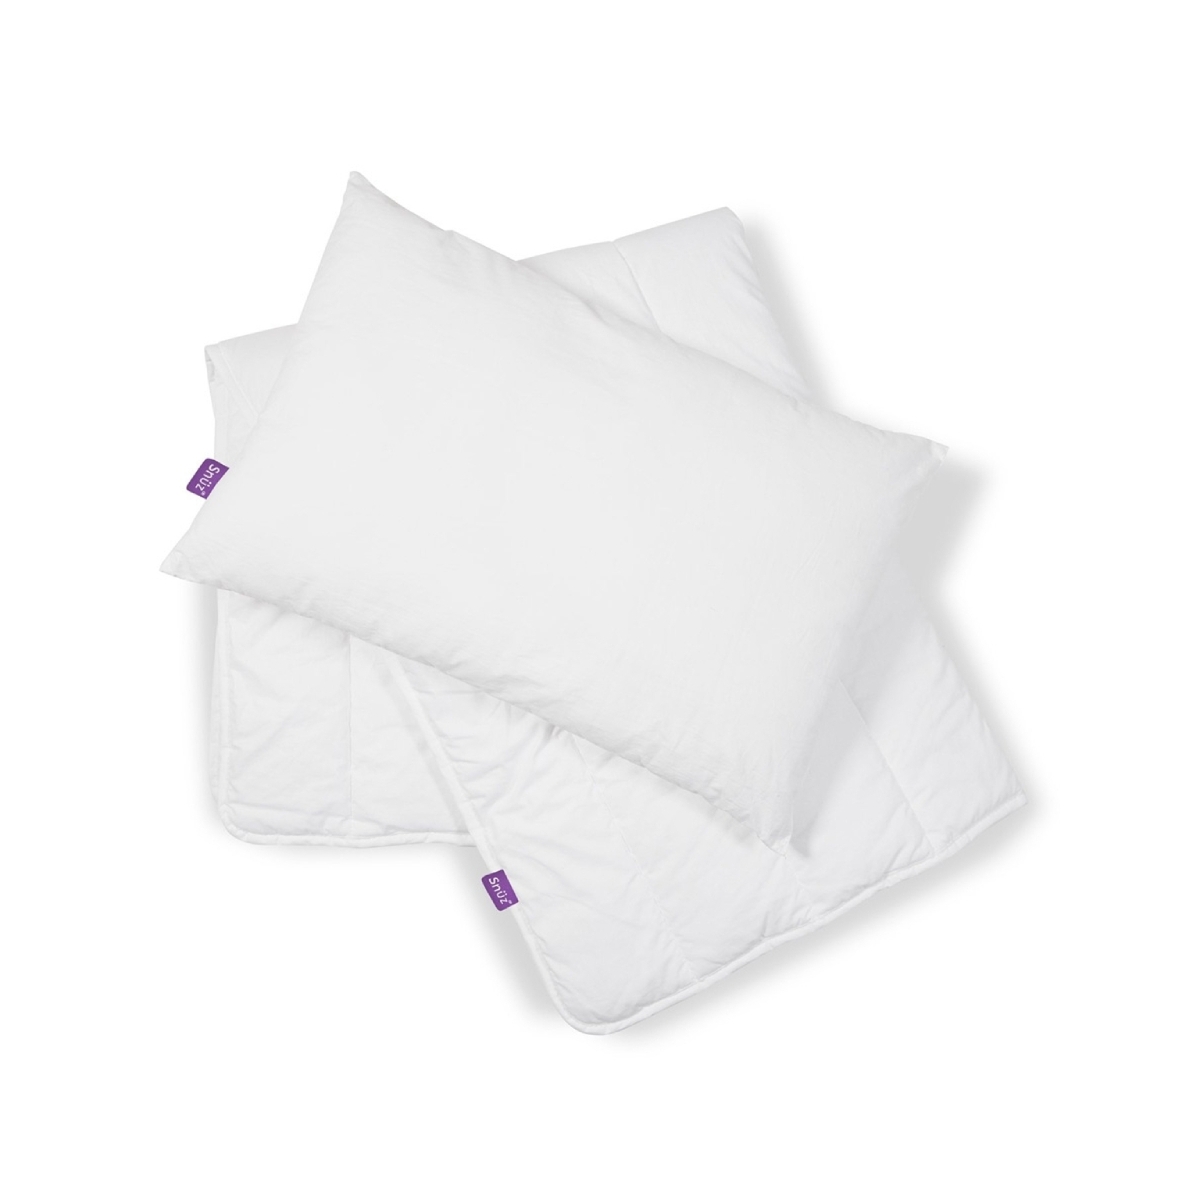 Snuz Duvet and Pillow bundle 4.0 Tog